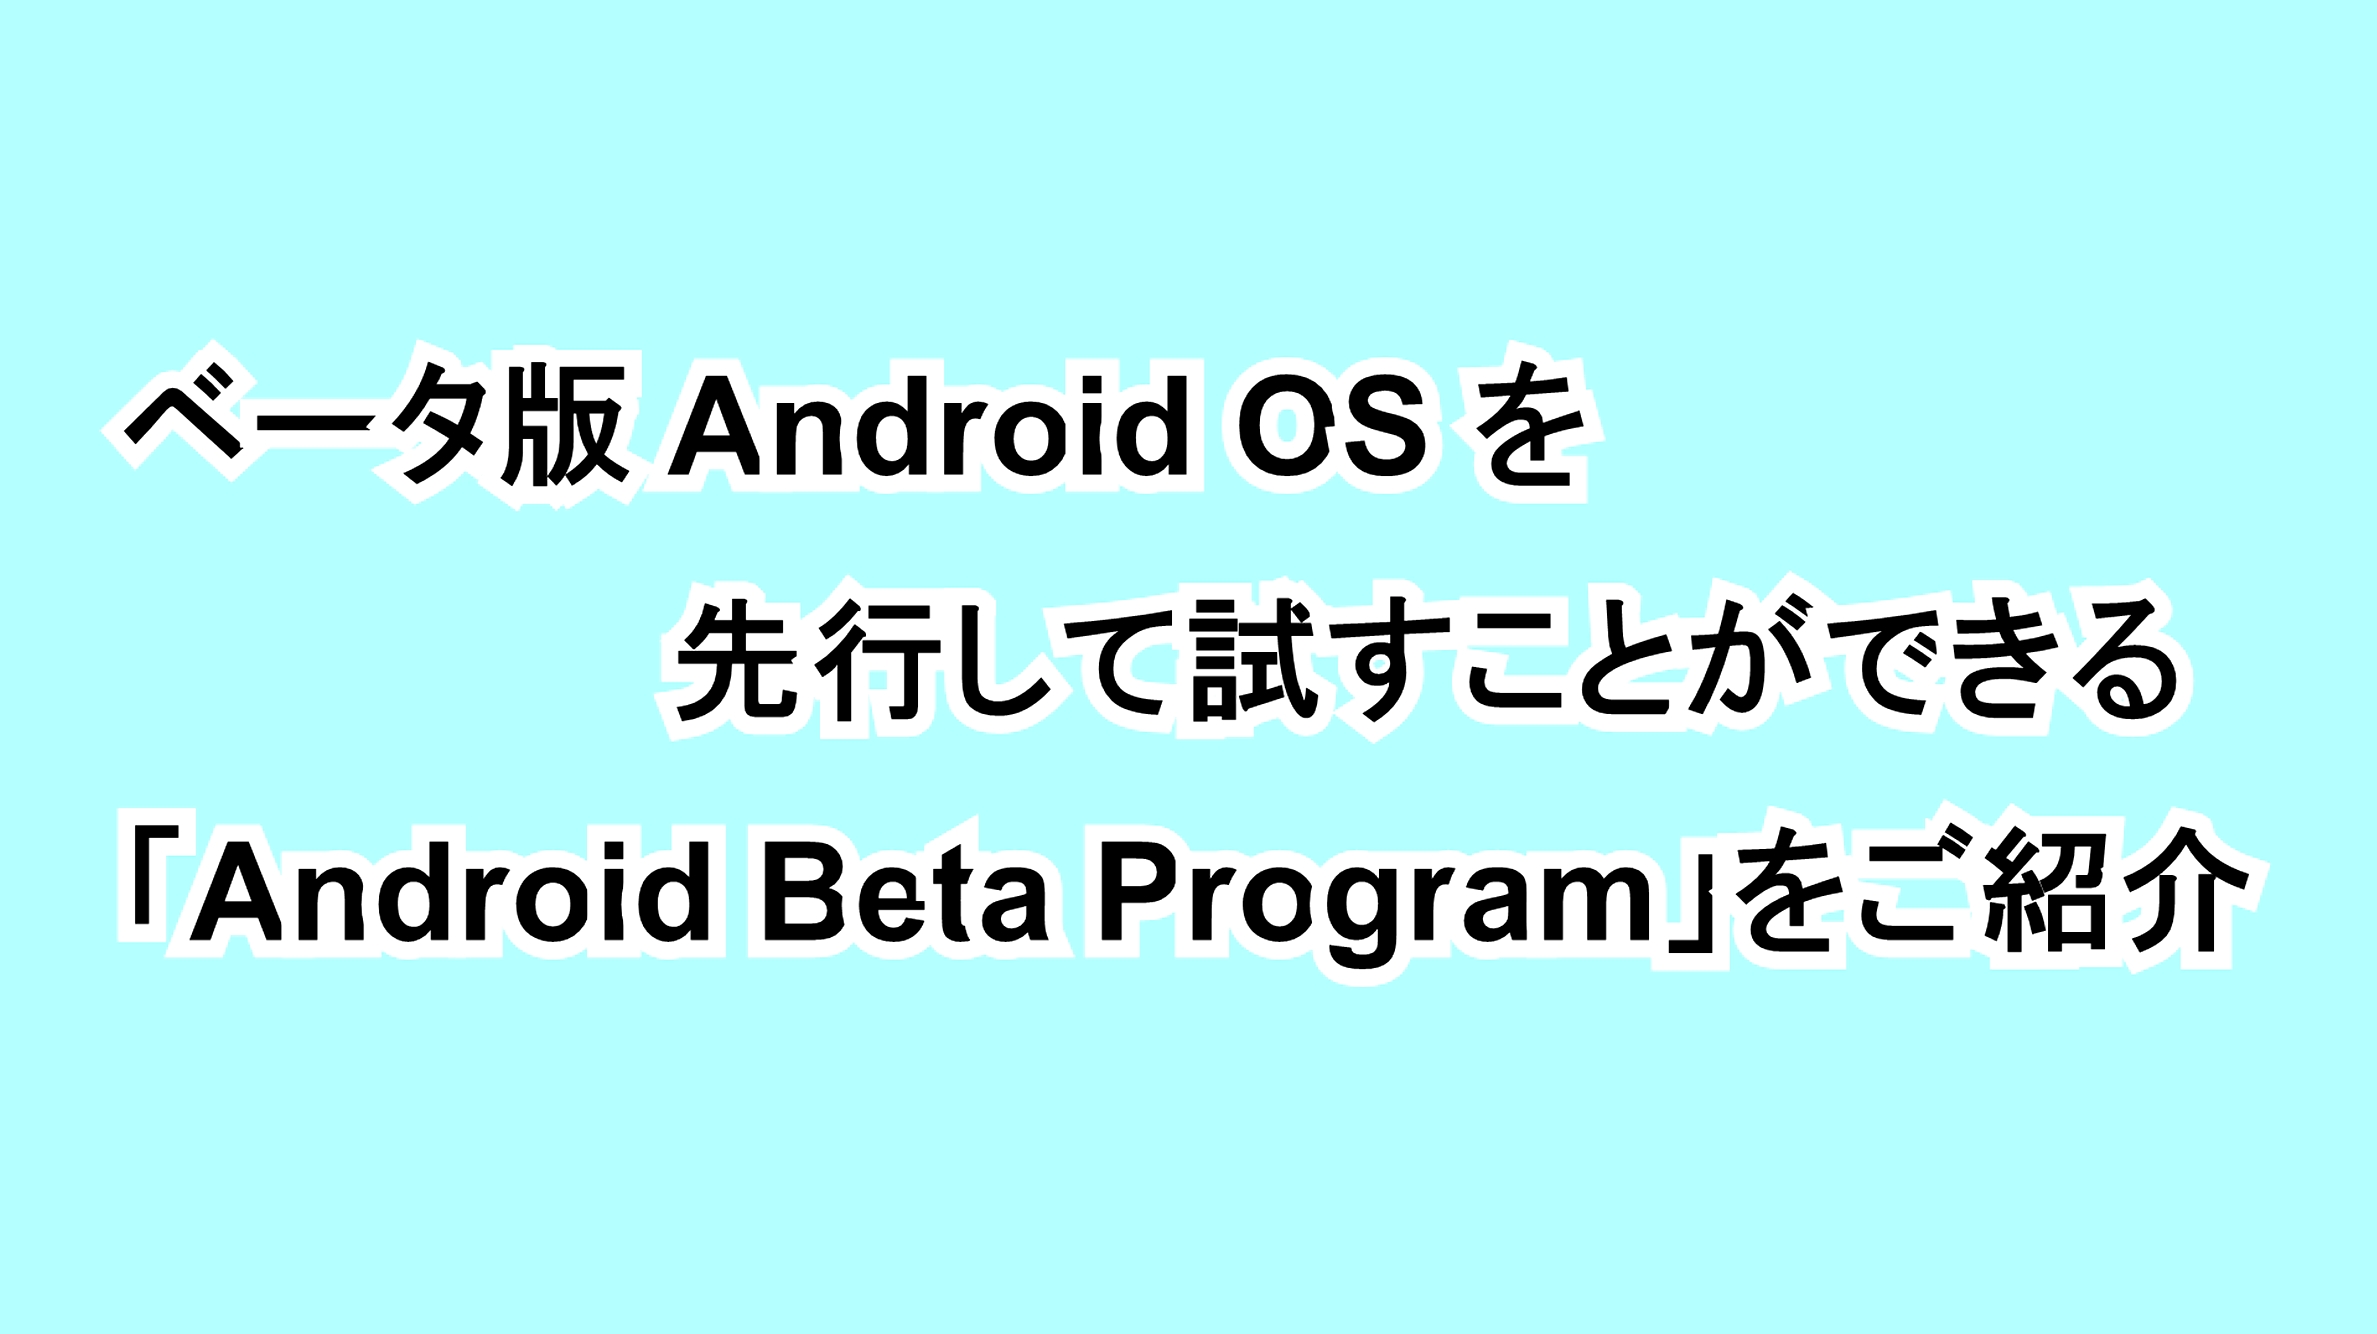 ベータ版Android OSを先行して試すことができる「Android Beta Program」をご紹介